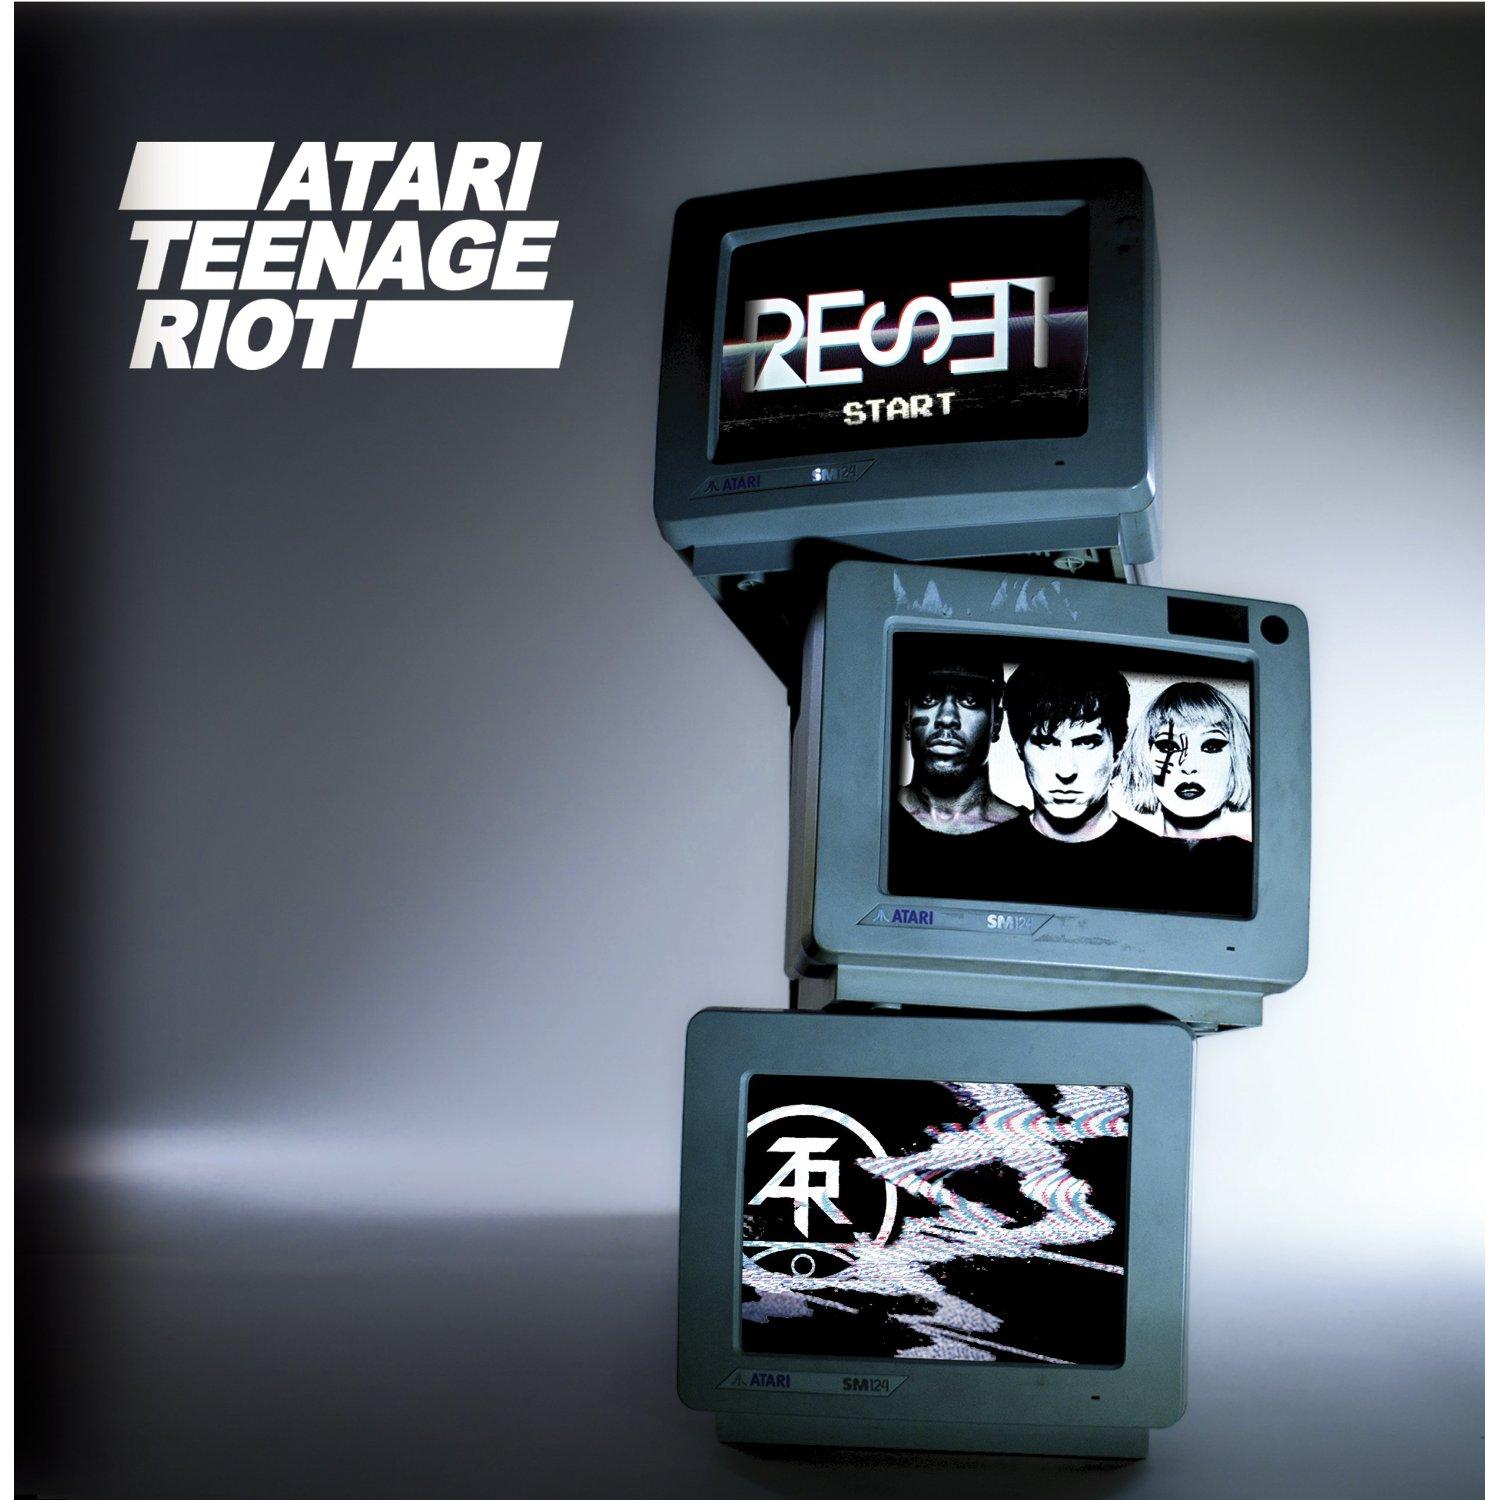 Atari teenage riot reset download